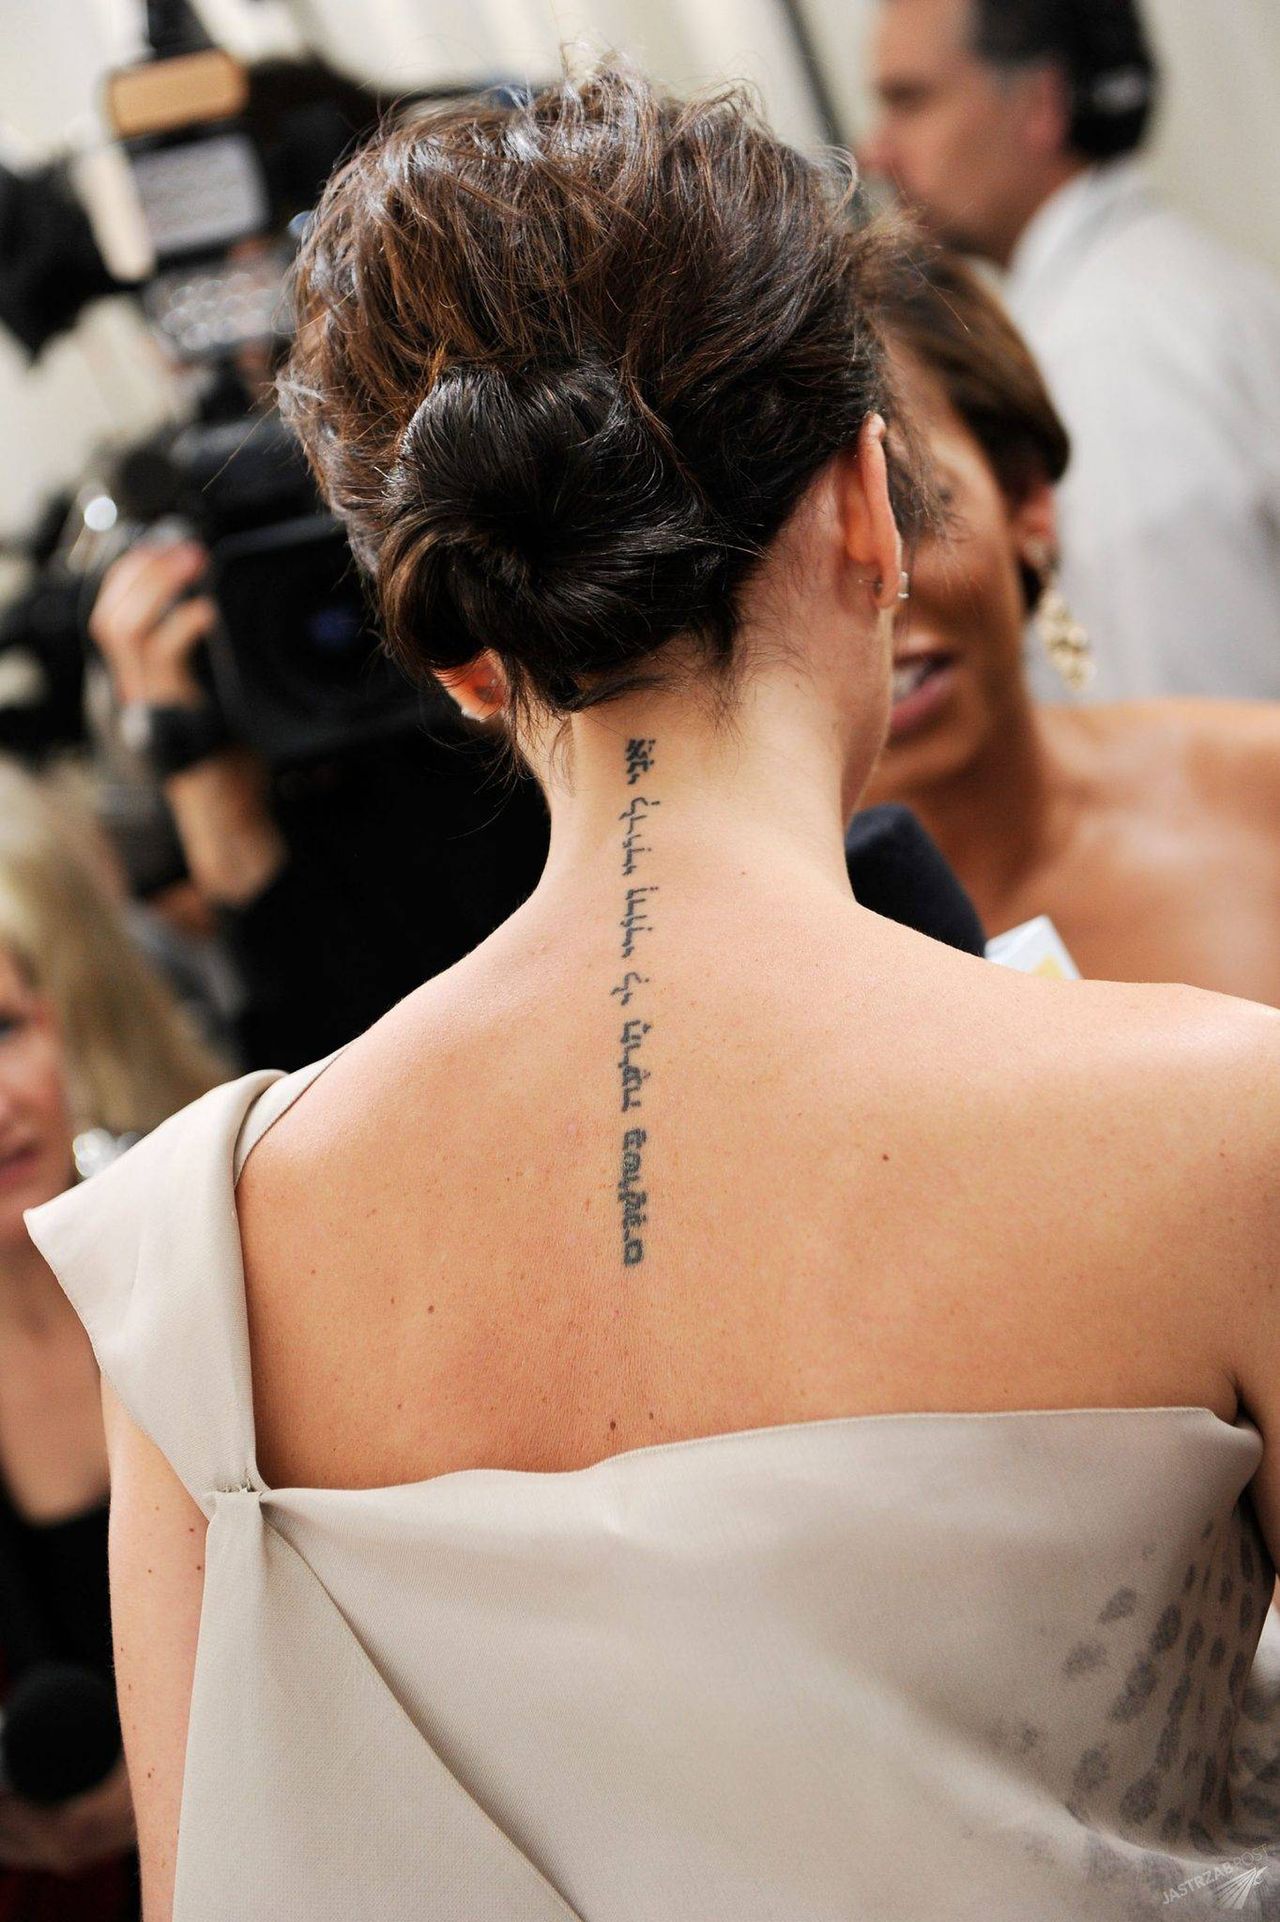 Tatuaż na szyi Victorii Beckham zapisany jest w języku hebrajskim